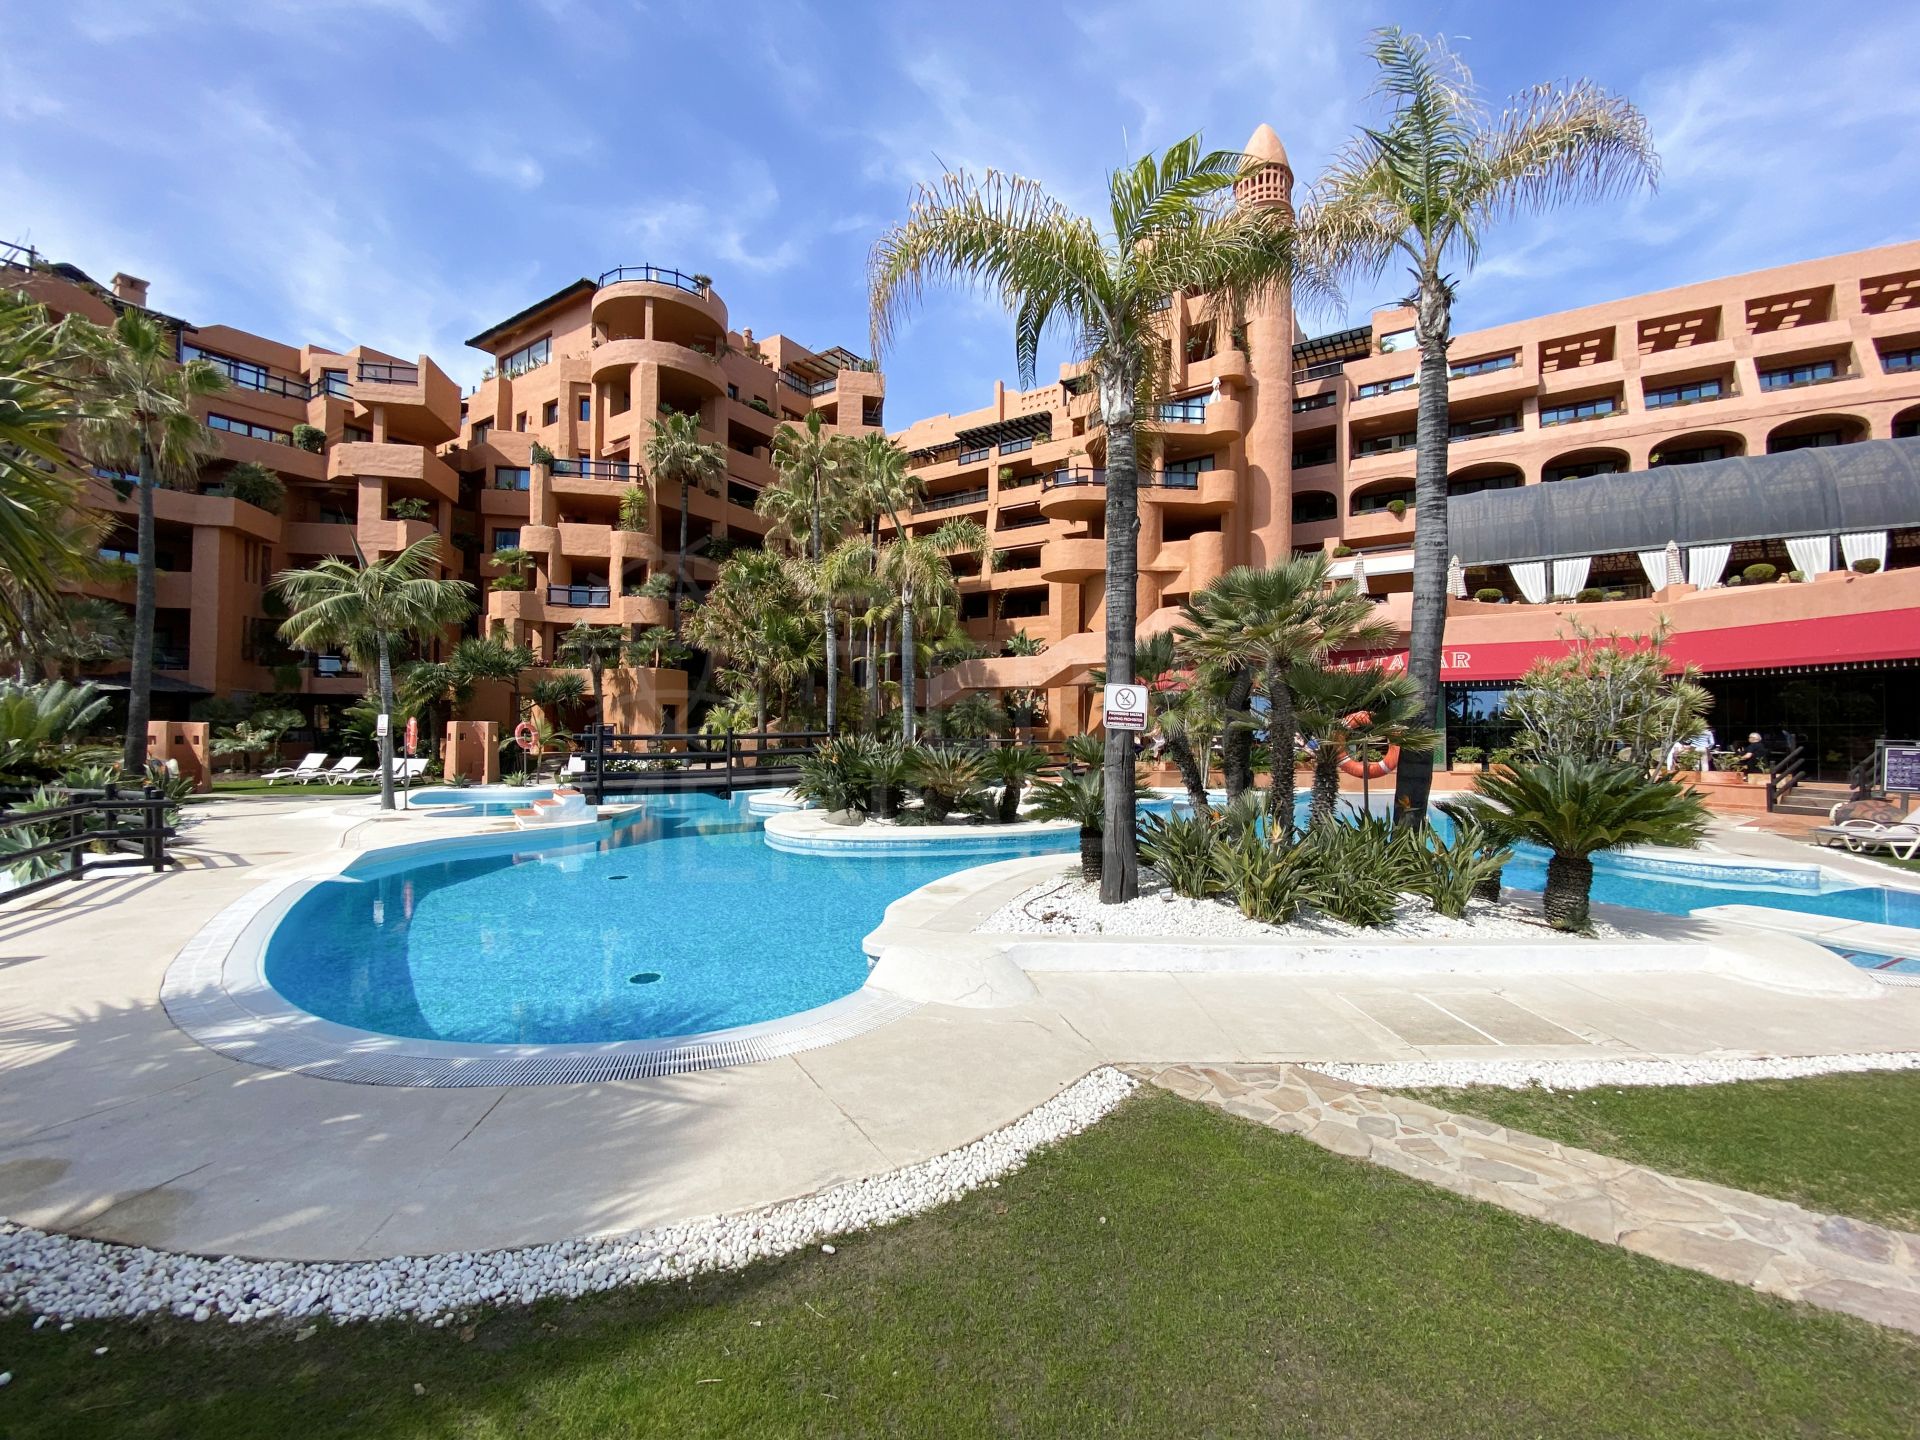 Fabuloso apartamento de 1 dormitorio con vistas panorámicas al mar en venta en el Hotel Kempinski, Estepona